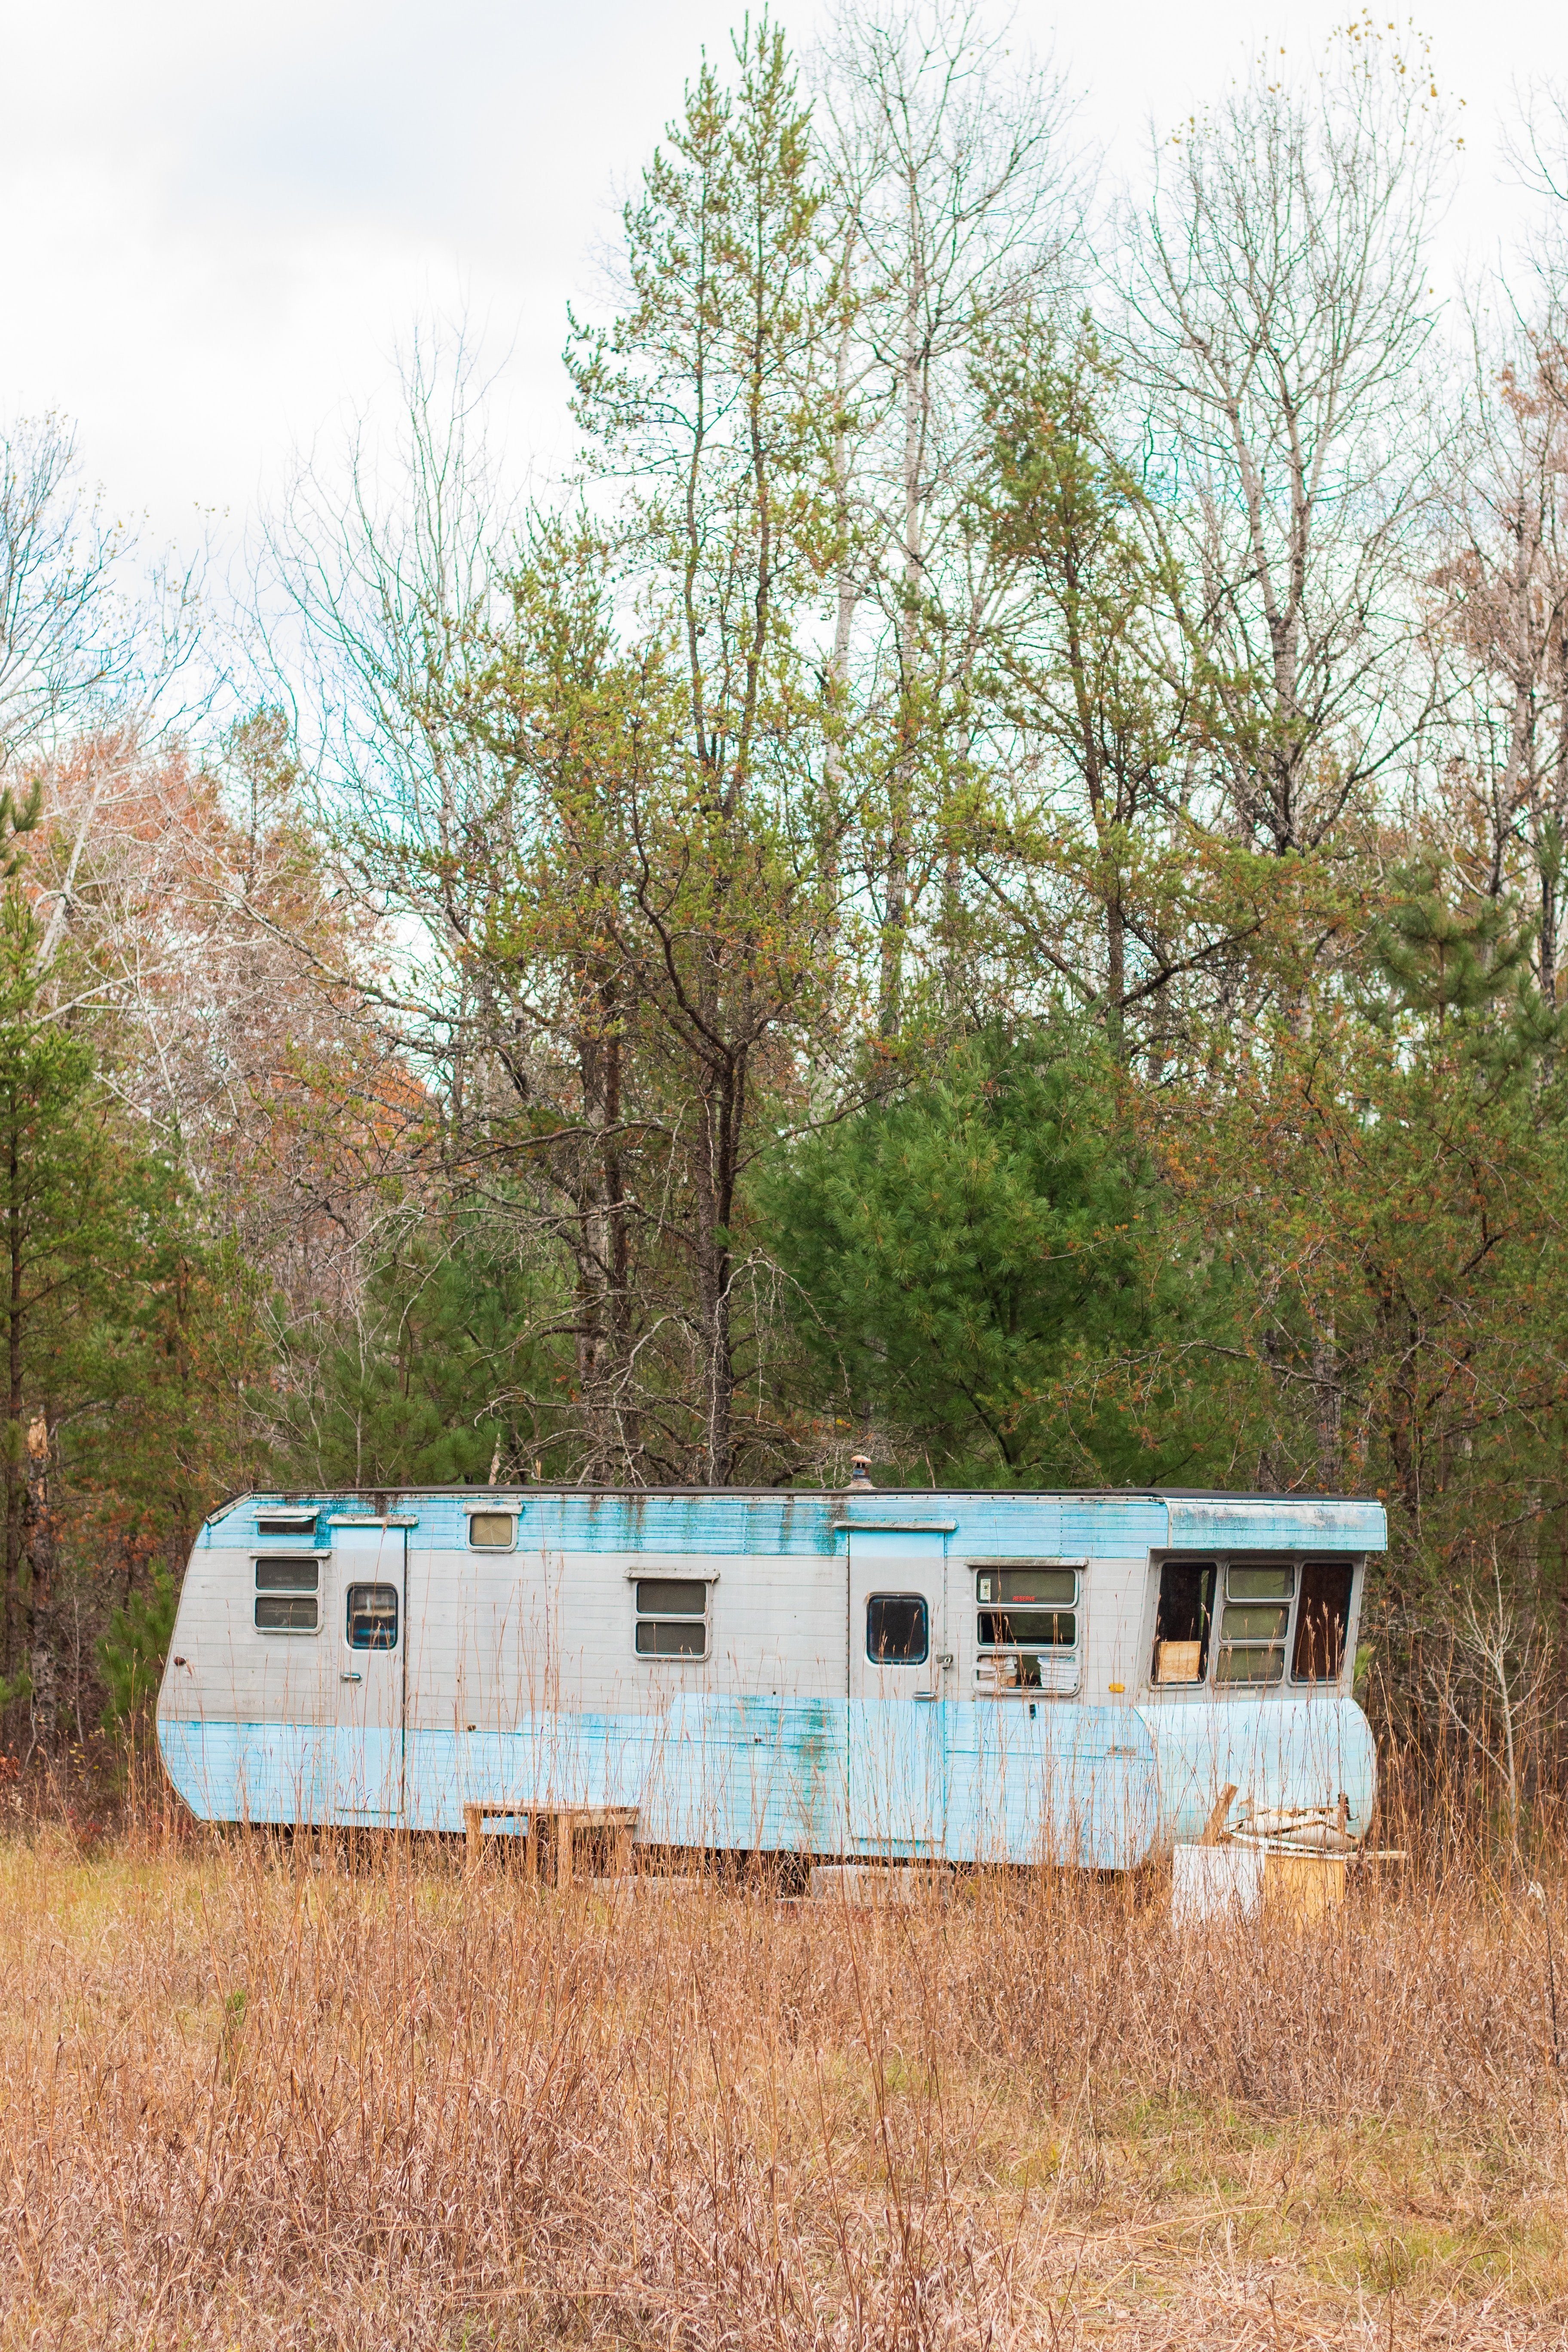 Una casa rodante estacionada en el bosque. | Imagen: Unsplash.com